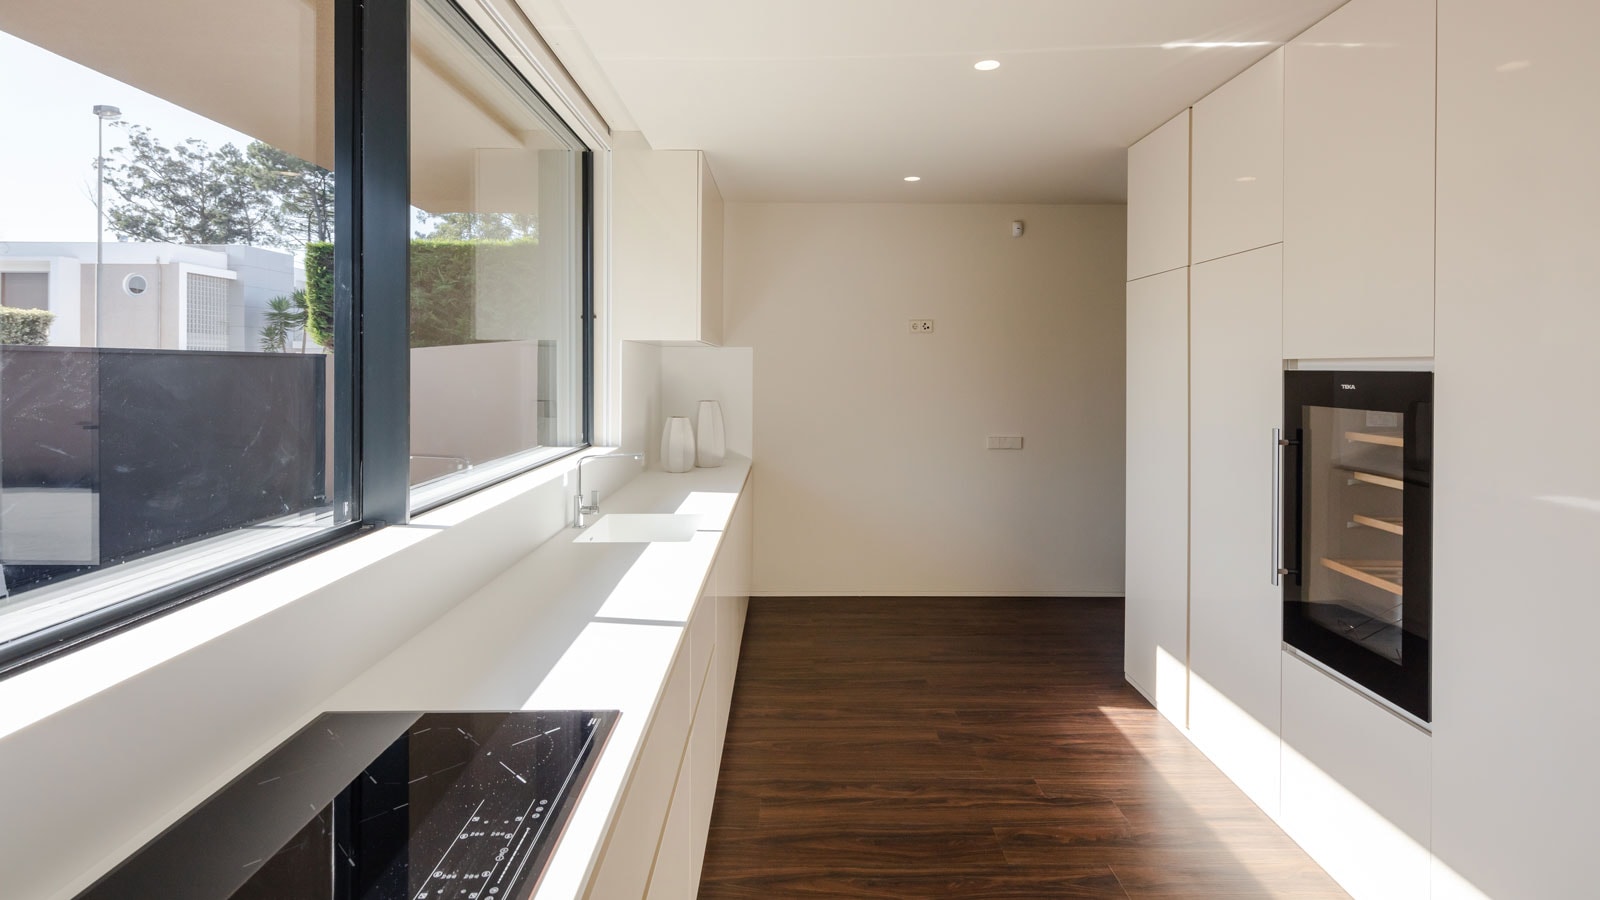 PORCELANOSA Grupo Projects: Casa Areia en Oporto, una vivienda extraluminosa diseñada para el disfrute